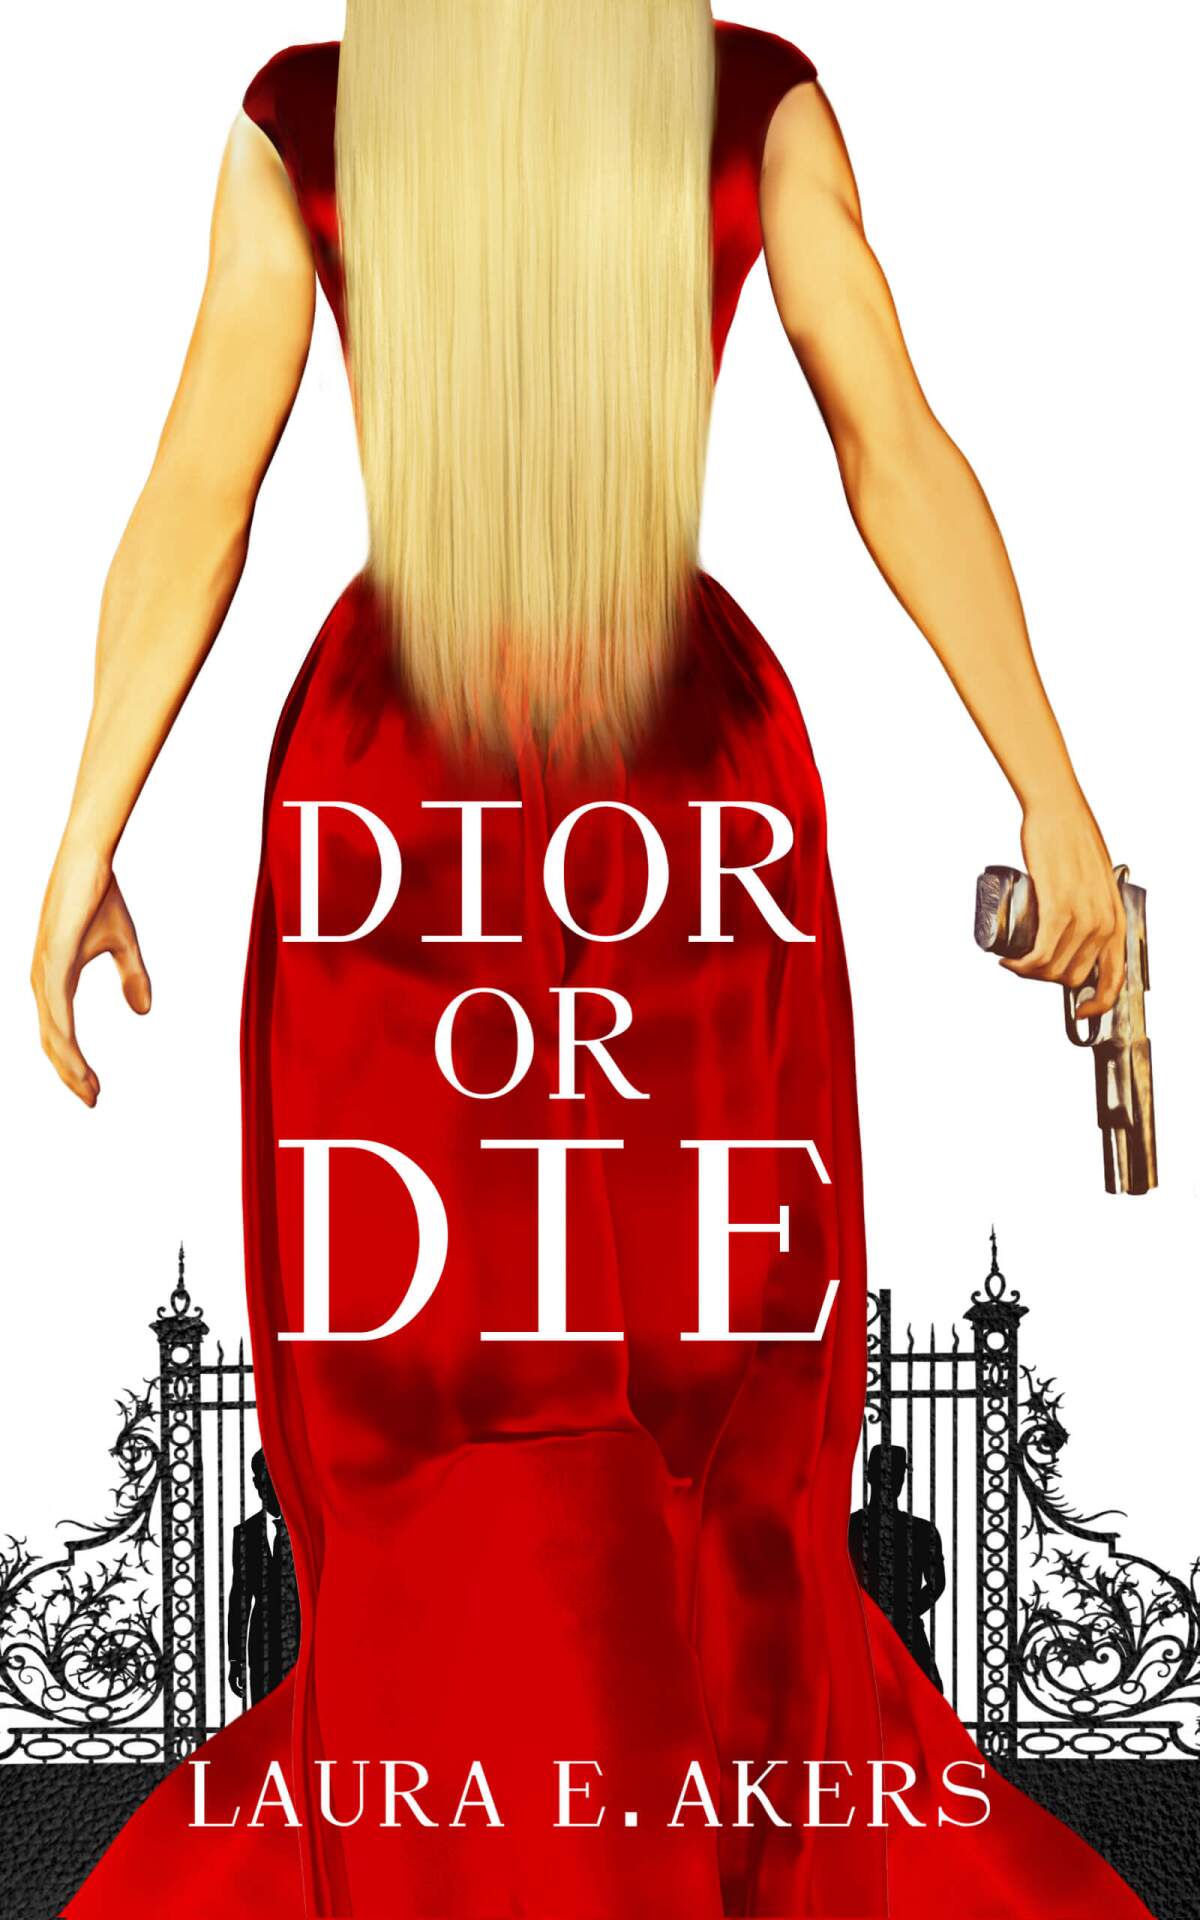 "Dior or Die" by Laura Akers